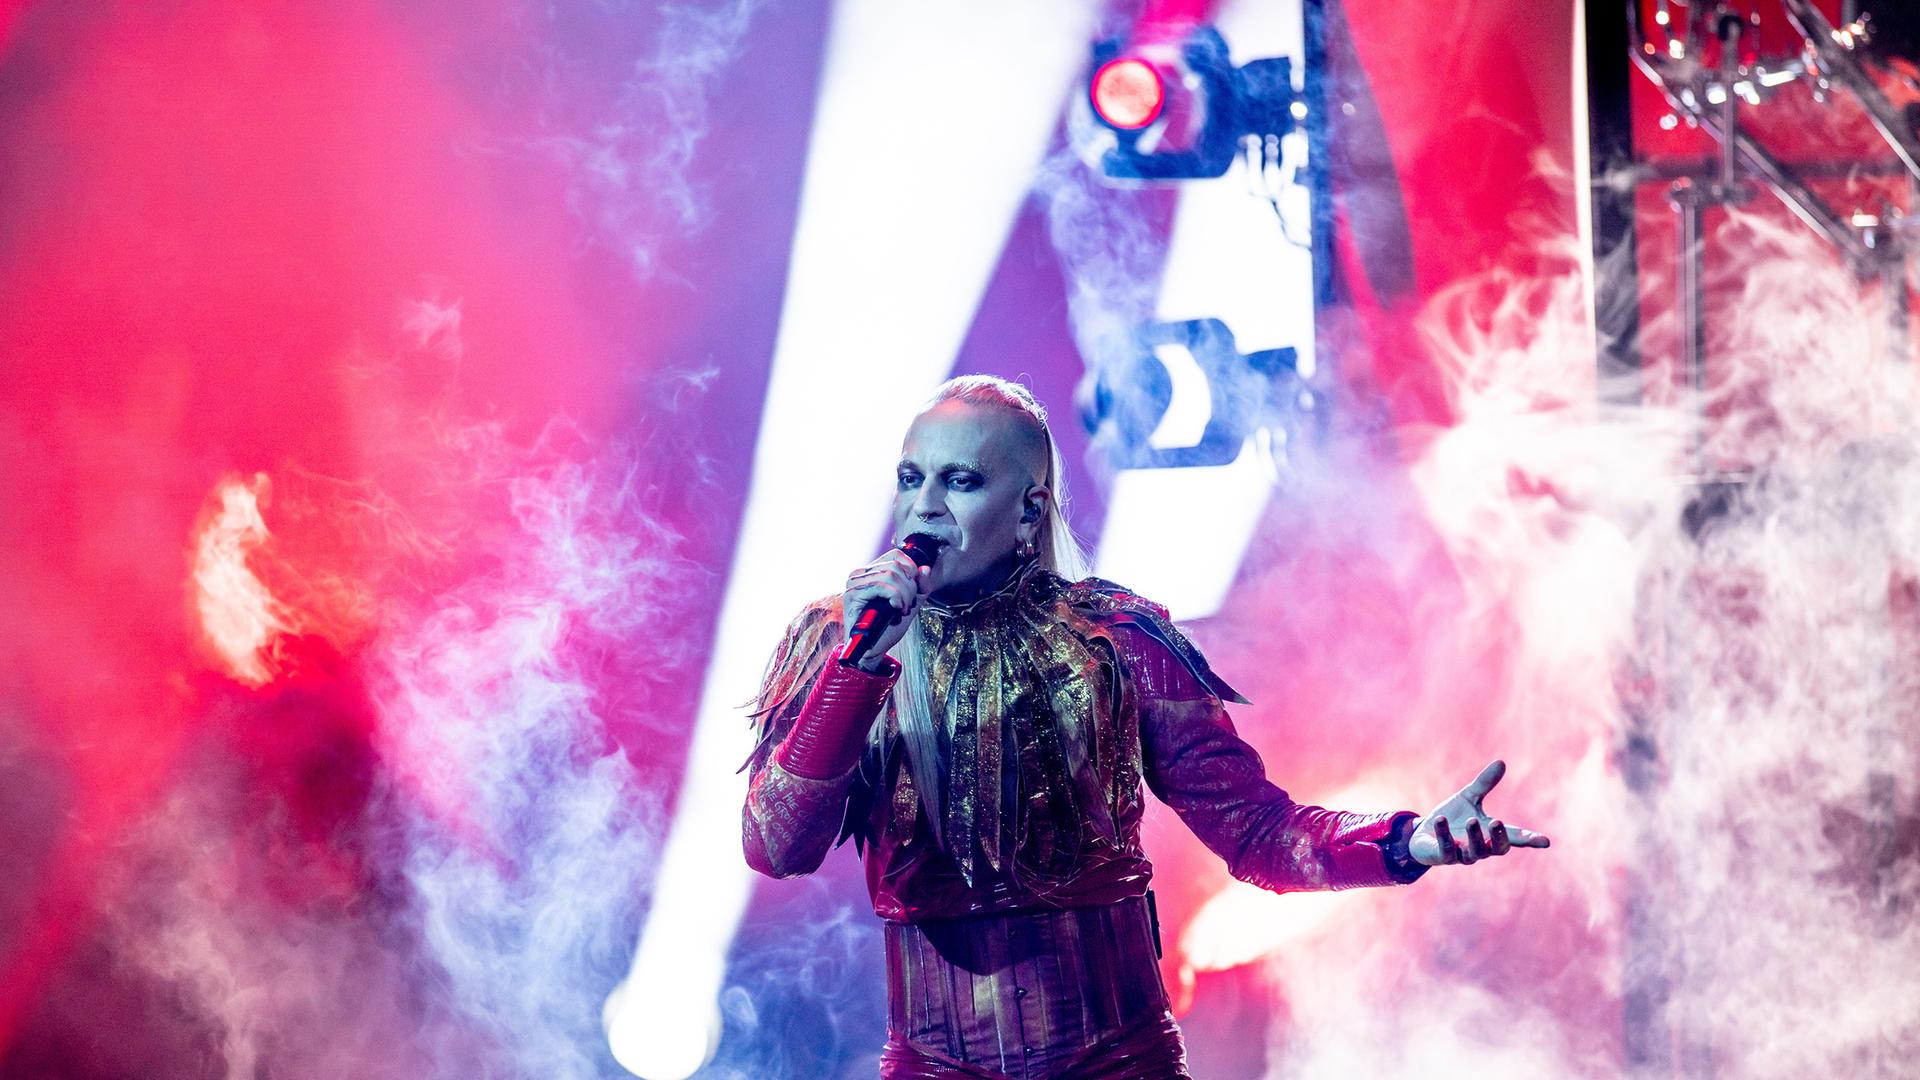 Lord of the Lost-Frontmann Chris Harms steht in seinem Kostüm, geschminkt und mit langem blondem Haar auf der Bühne und singt in ein Mikrofon.